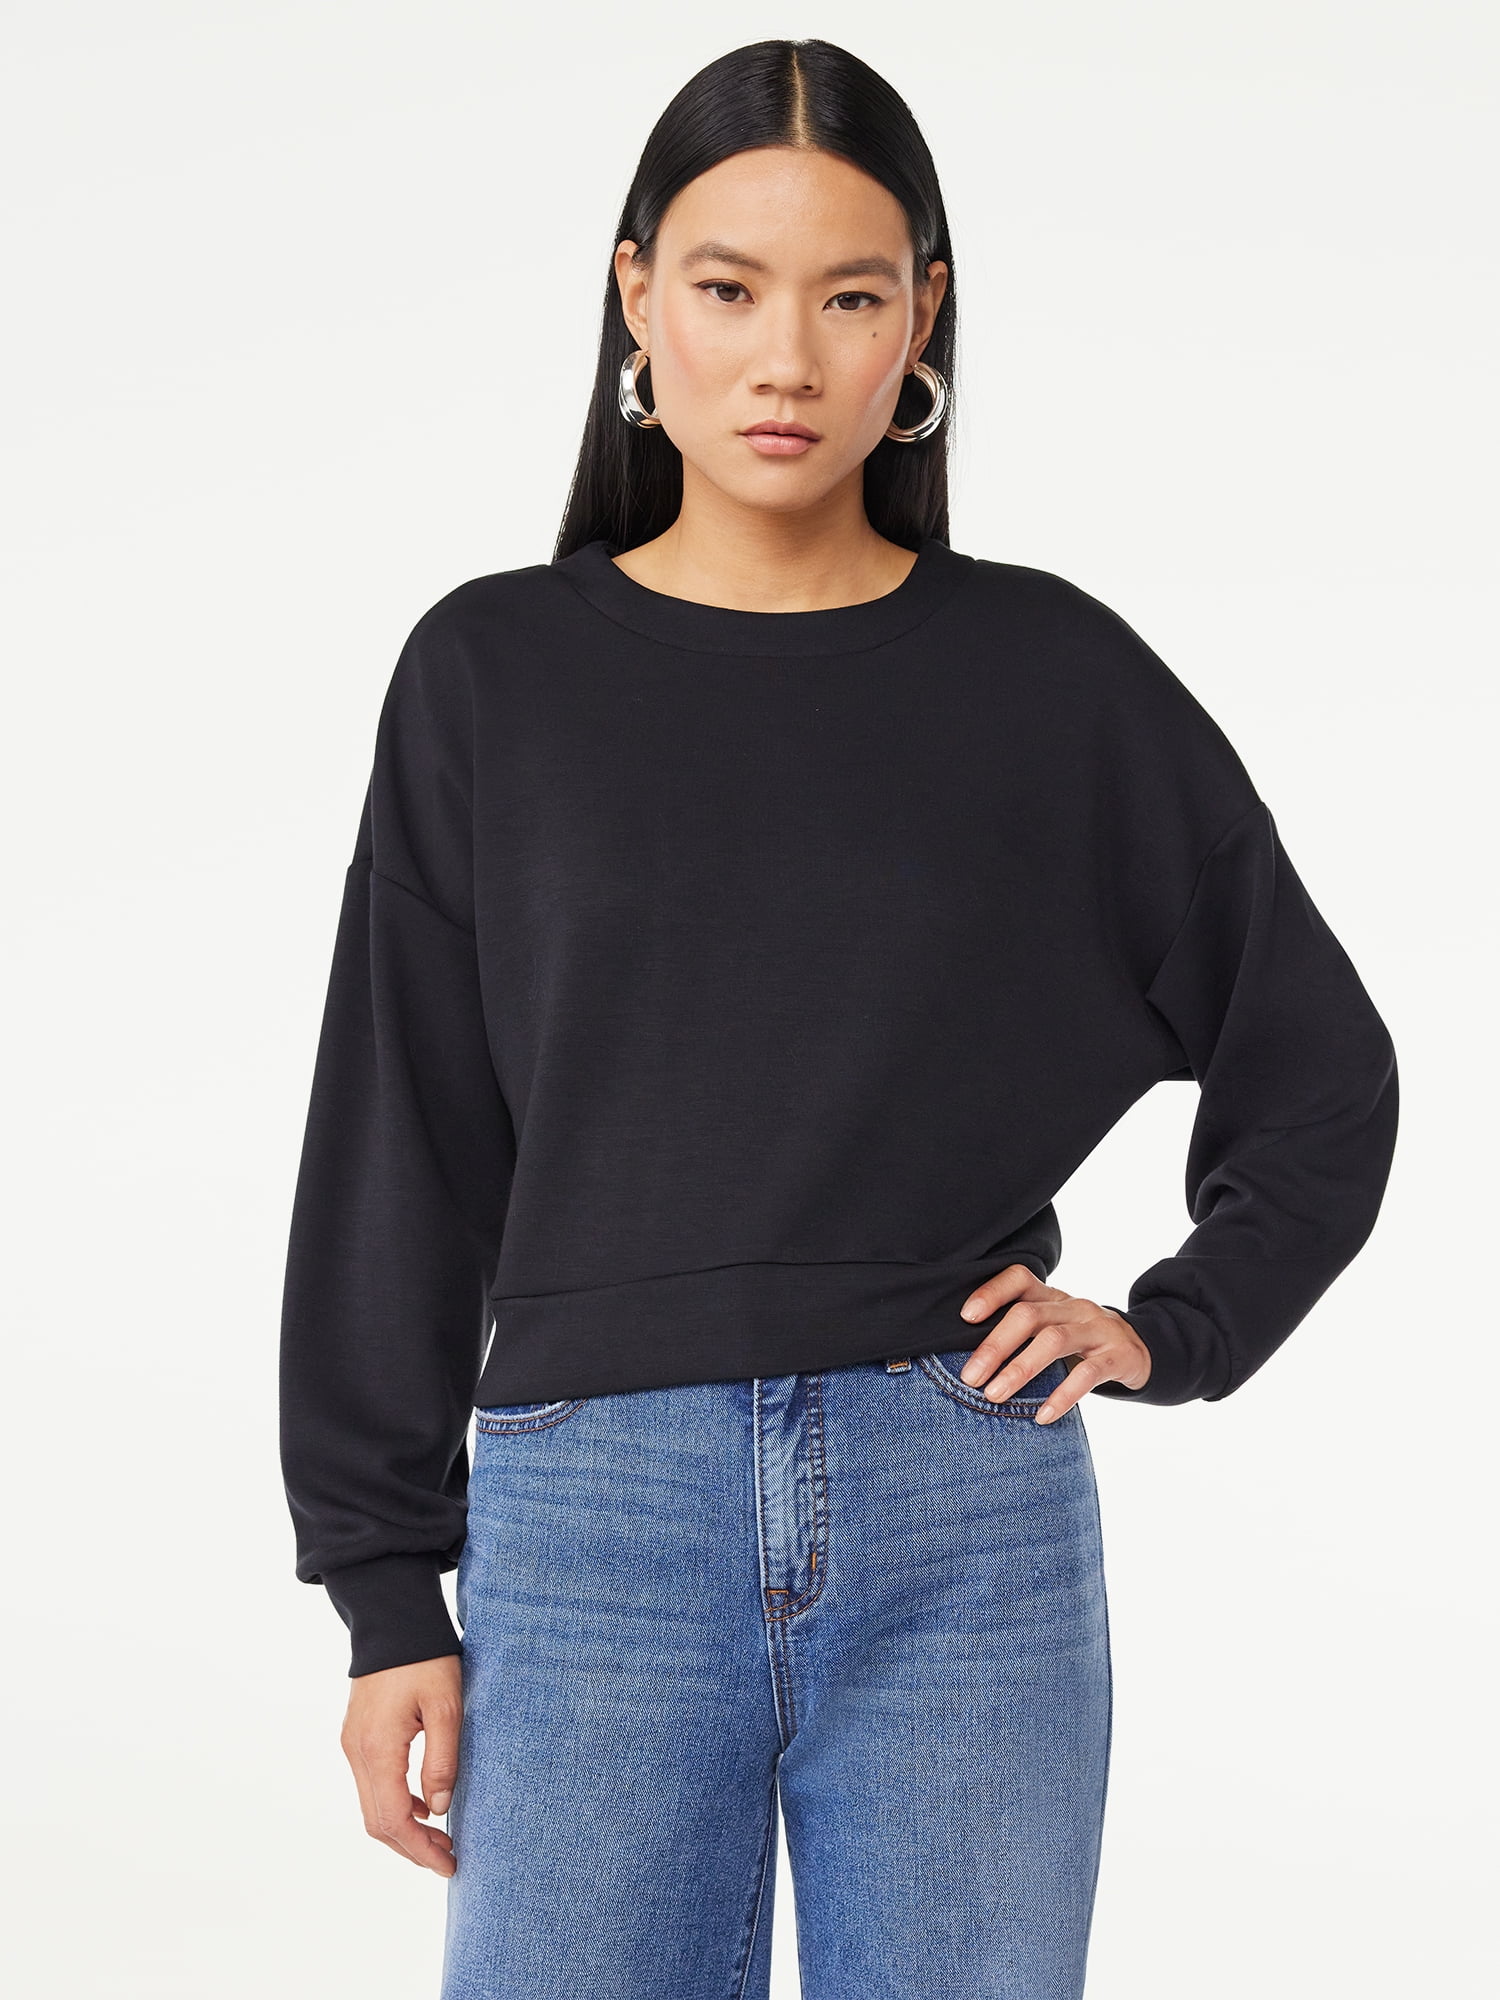 Scoop Women's Scuba Knit Cropped Sweatshirt with Drop Sleeves, Size XS ...